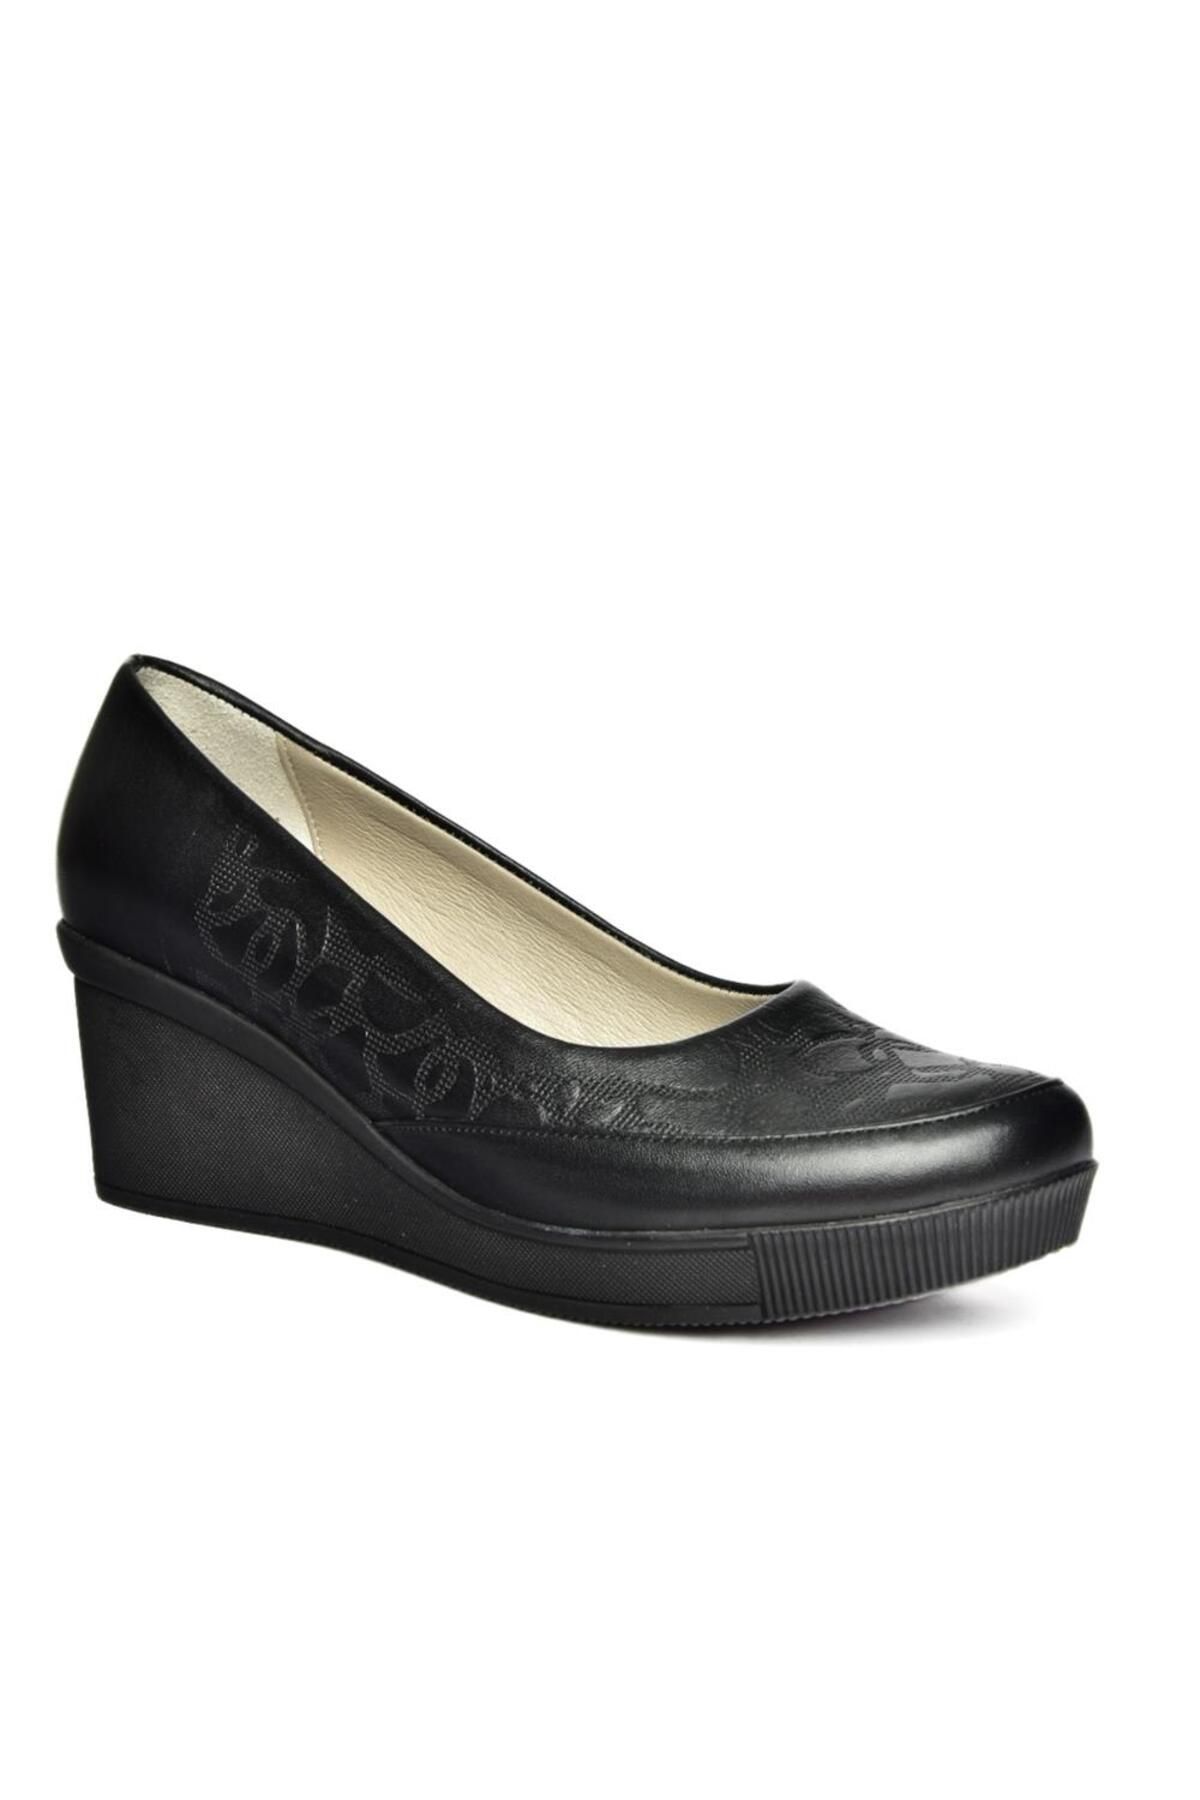 Fox Shoes R908353803 Siyah Hakiki Deri Dolgu Topuklu Kadın Ayakkabı